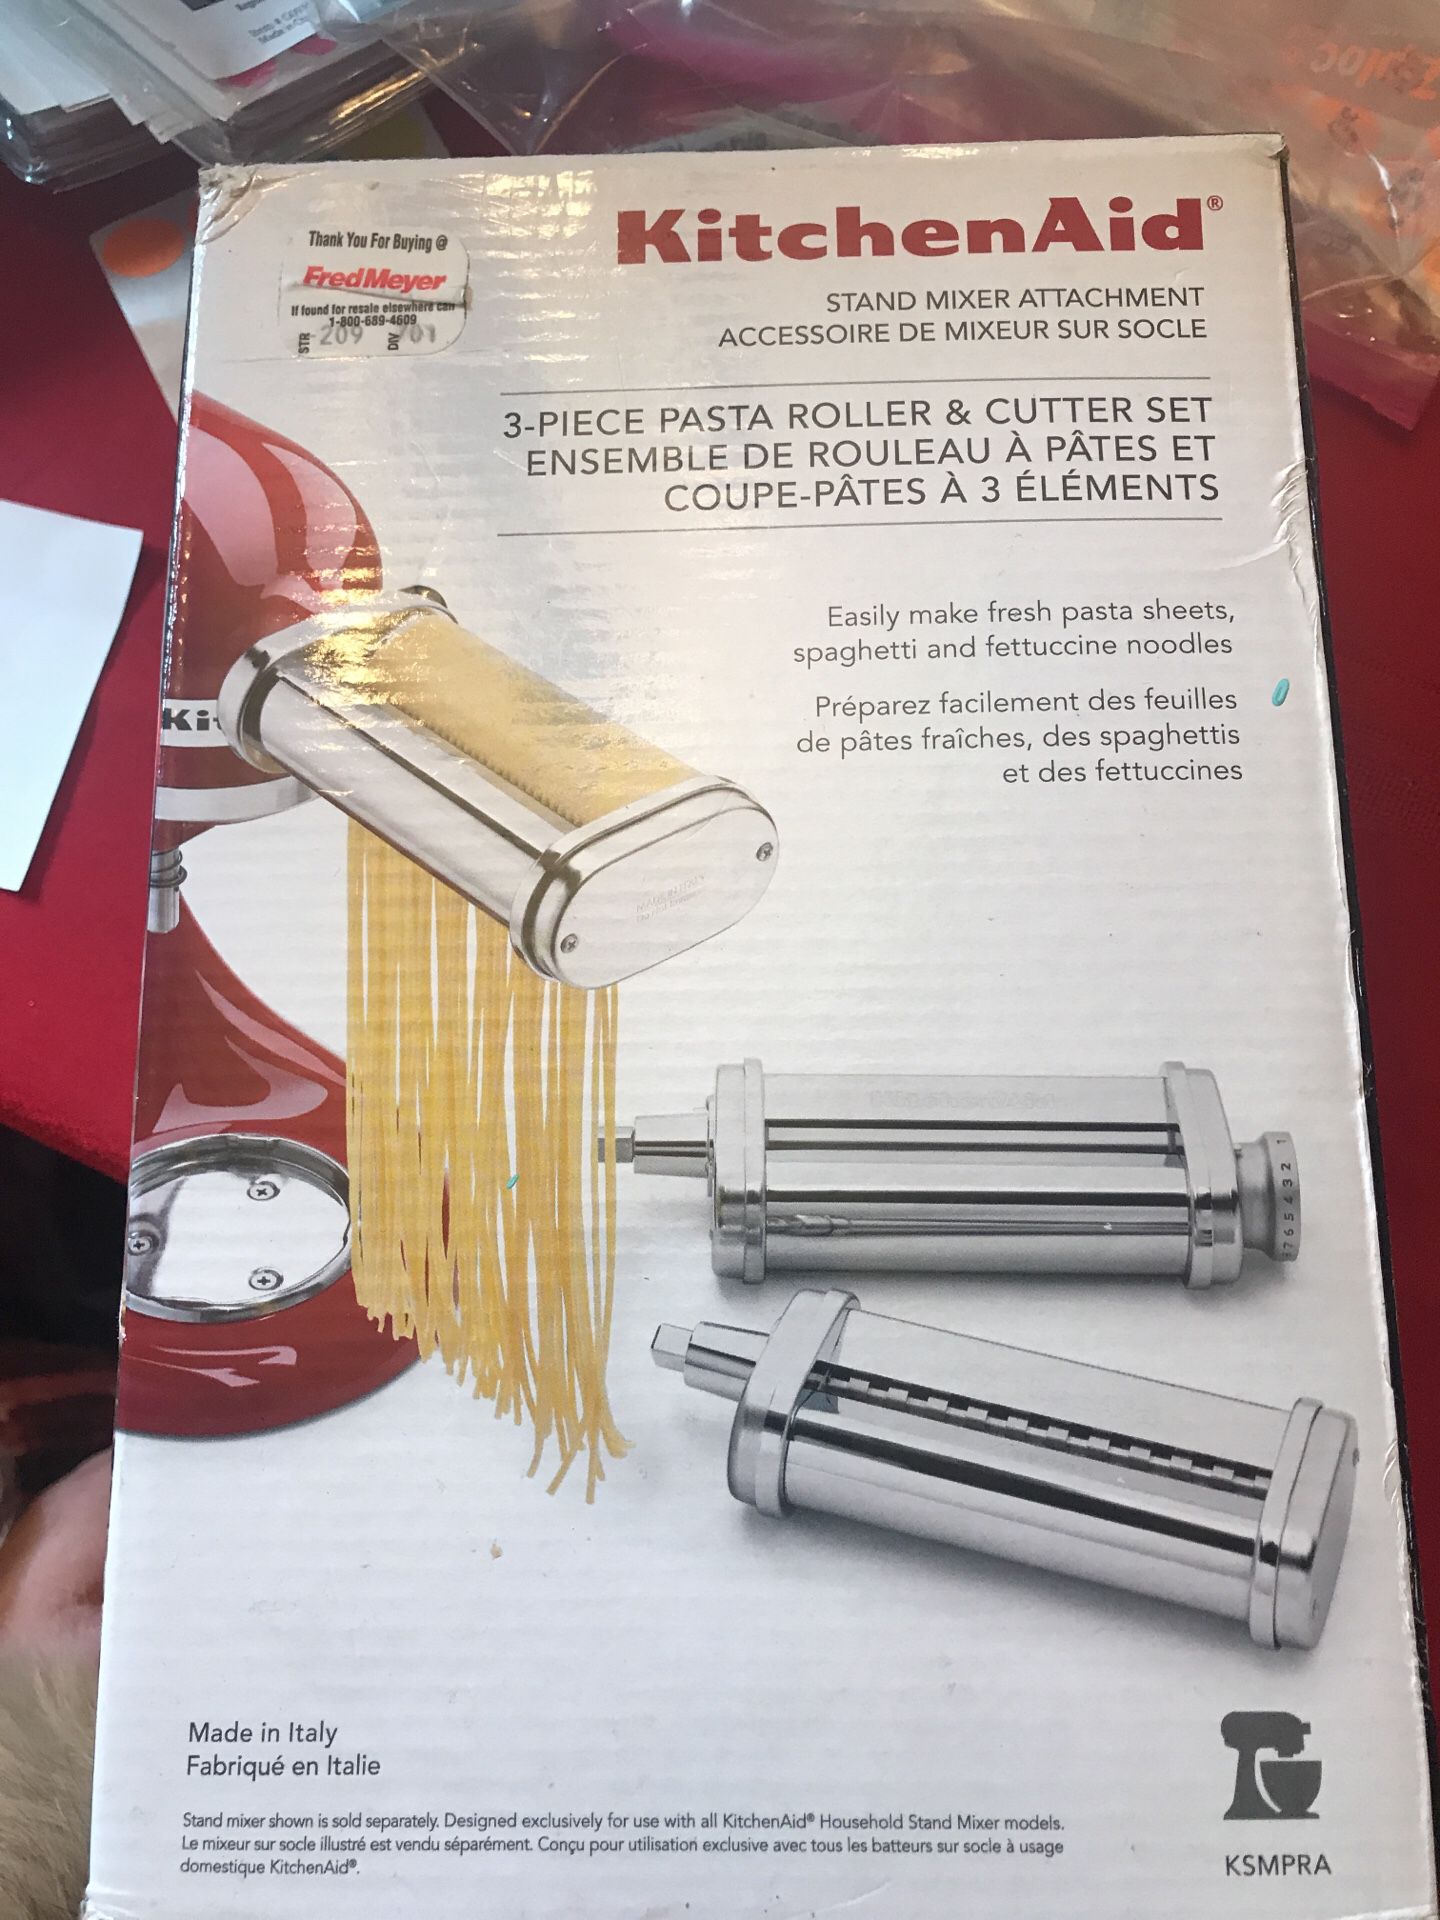 KitchenAid stand mixer attachment three-piece pasta roller cutter